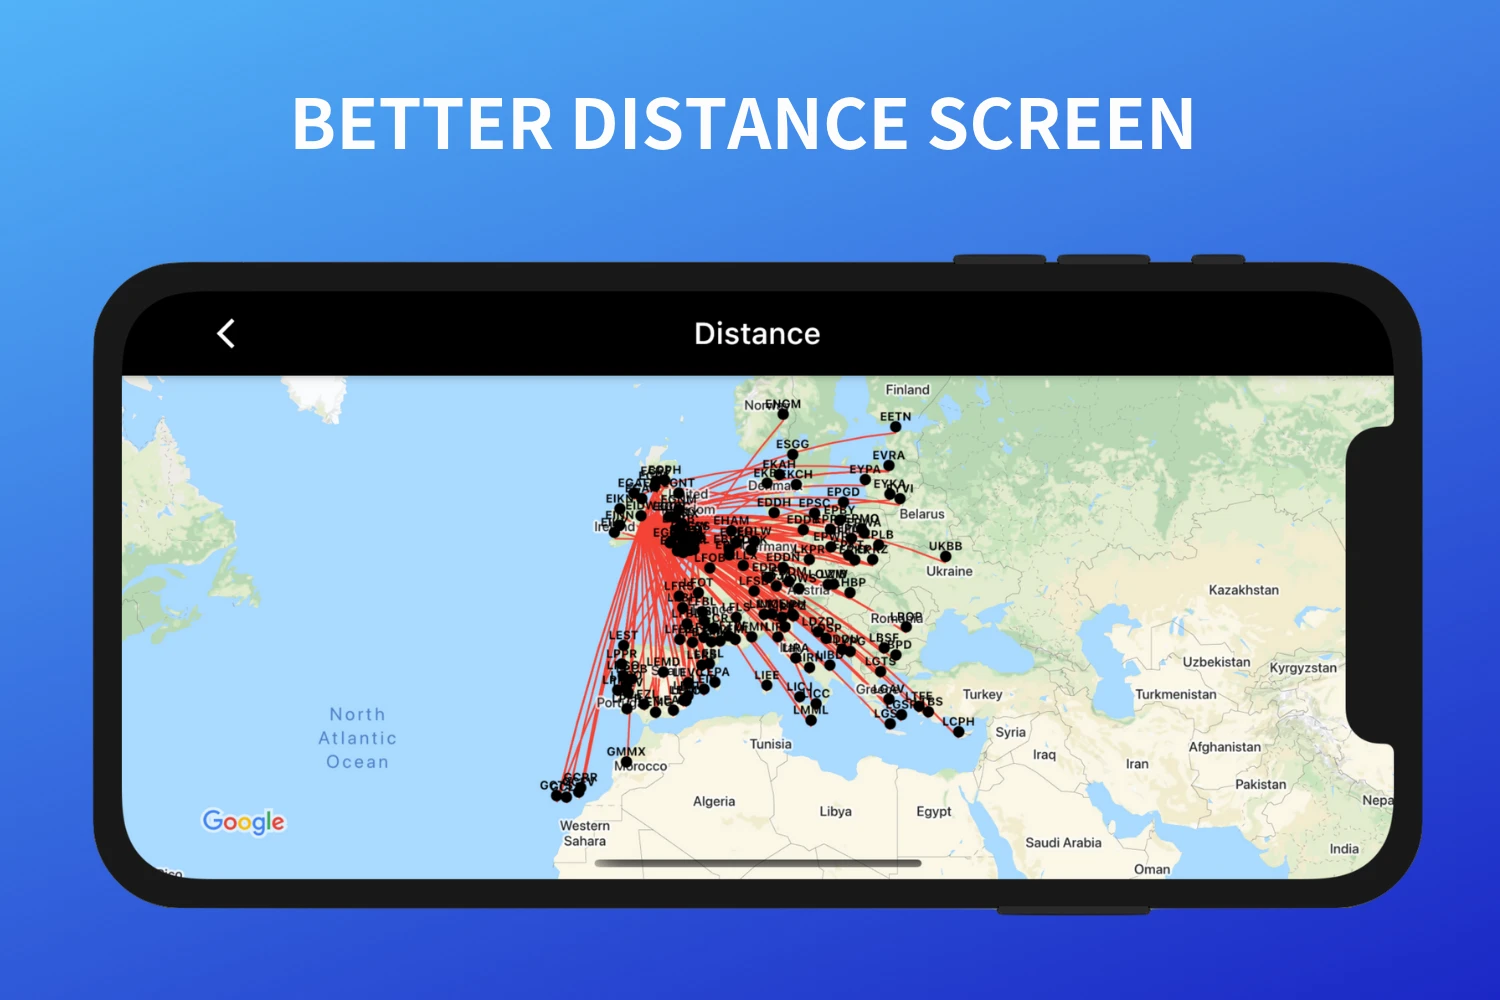 Better distance screen